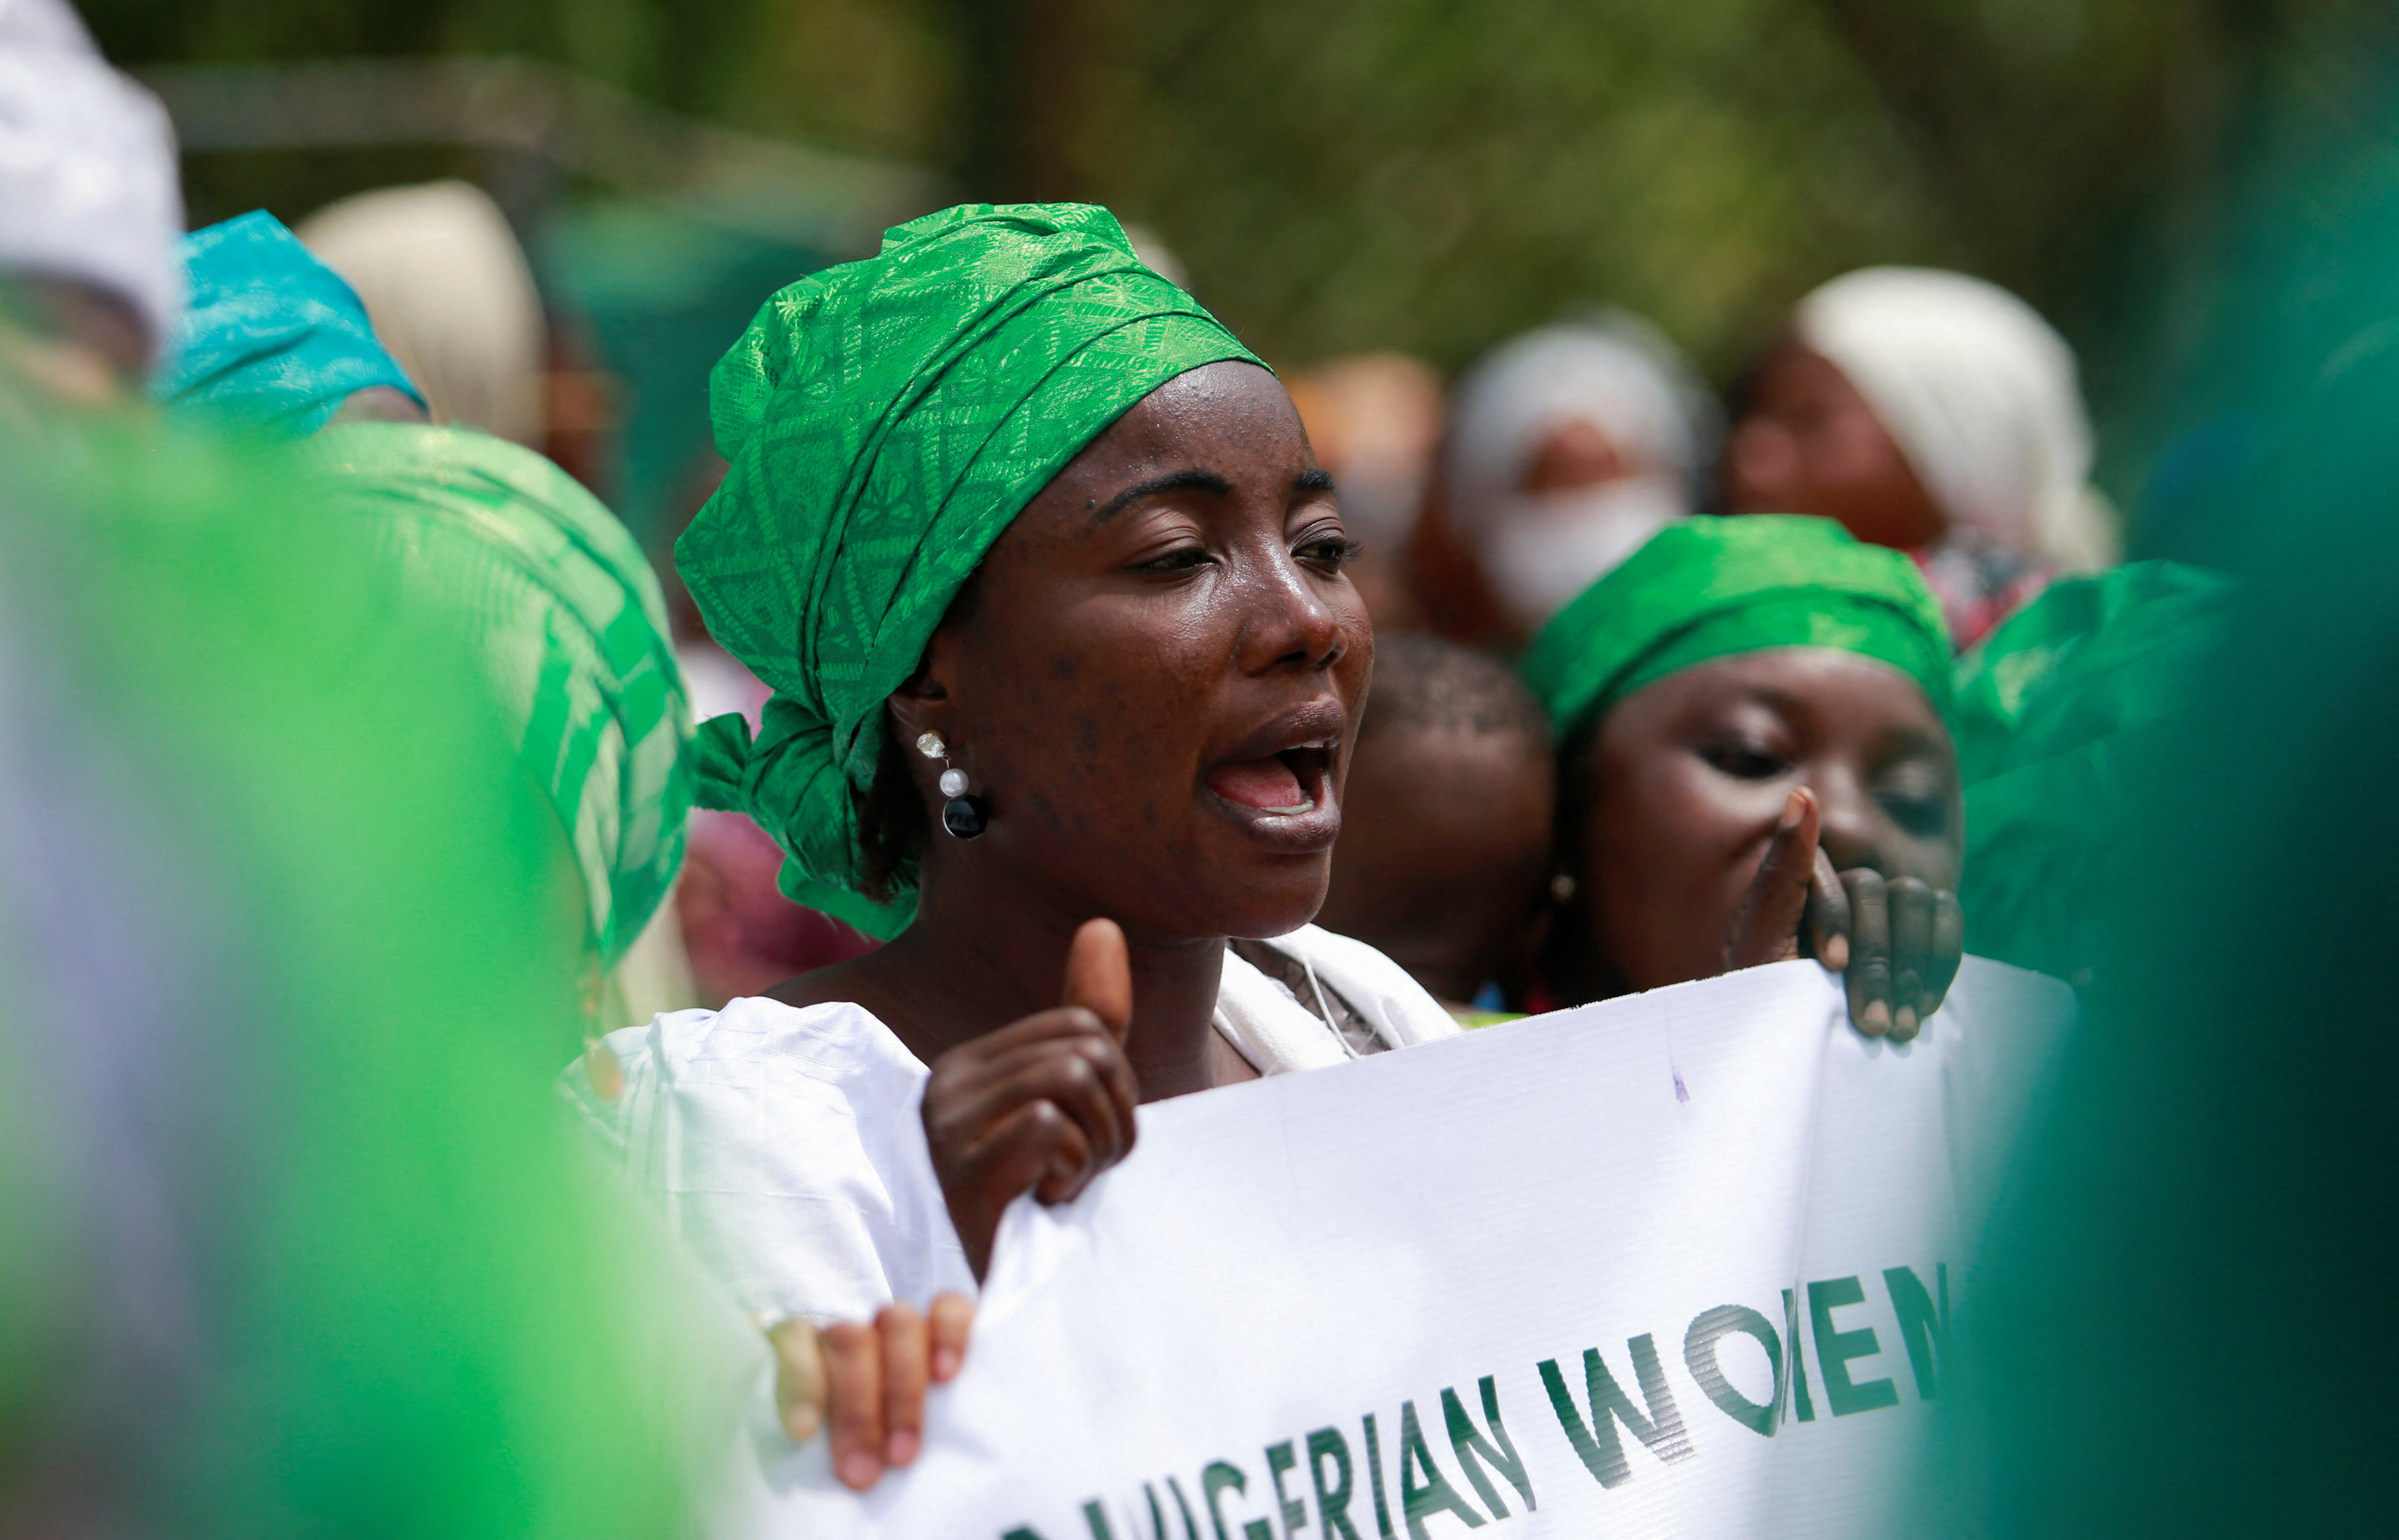 Una mujer sostiene una pancarta durante una protesta contra el sesgo legislativo contra las mujeres en Nigeria (REUTERS/Afolabi Sotunde)

